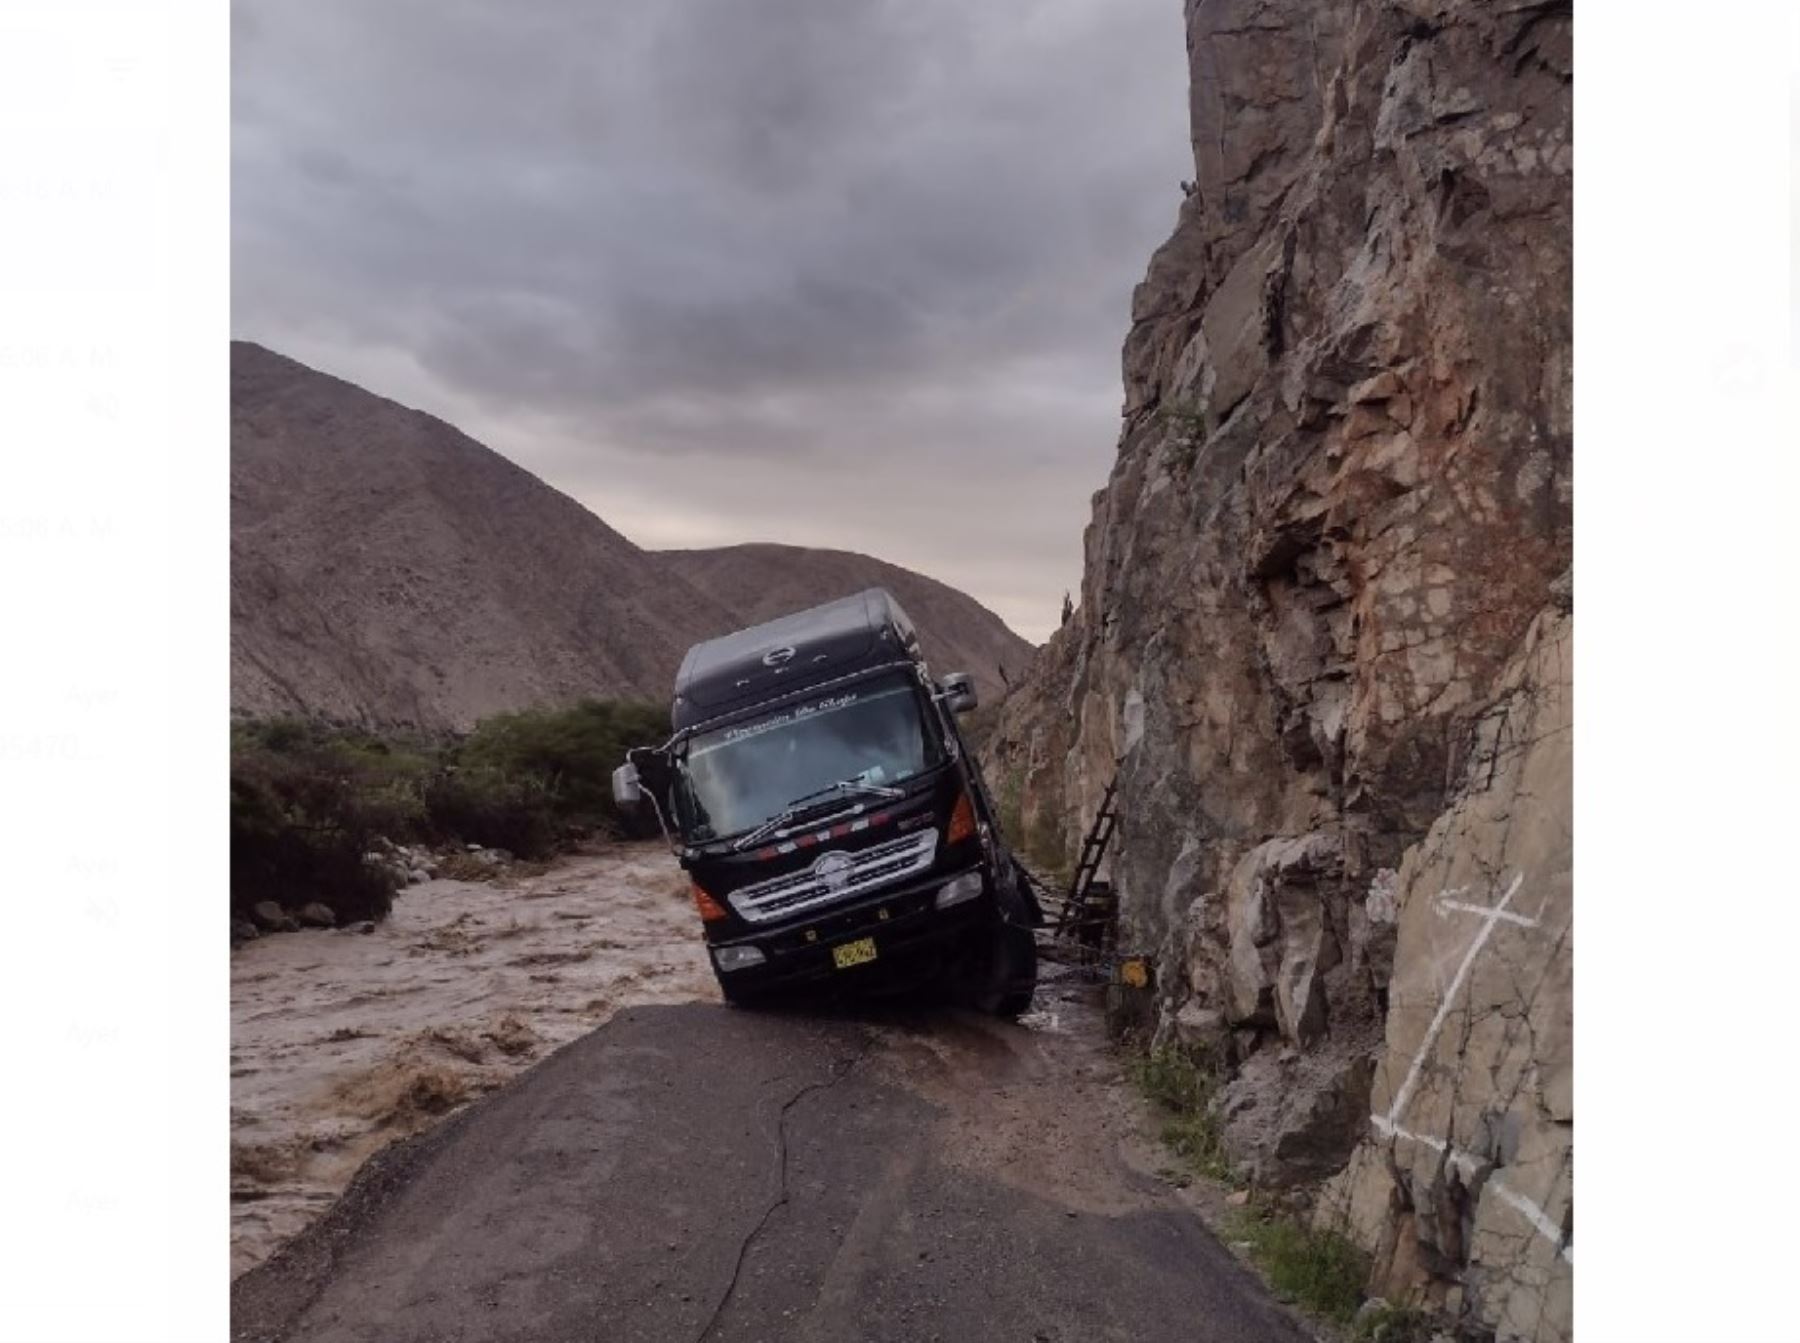 Al menos seis distritos de la provincia de Lucanas, región Ayacucho, quedaron aislados debido a que la carretera que une esa zona quedó severamente dañada a causa de las lluvias intensas.